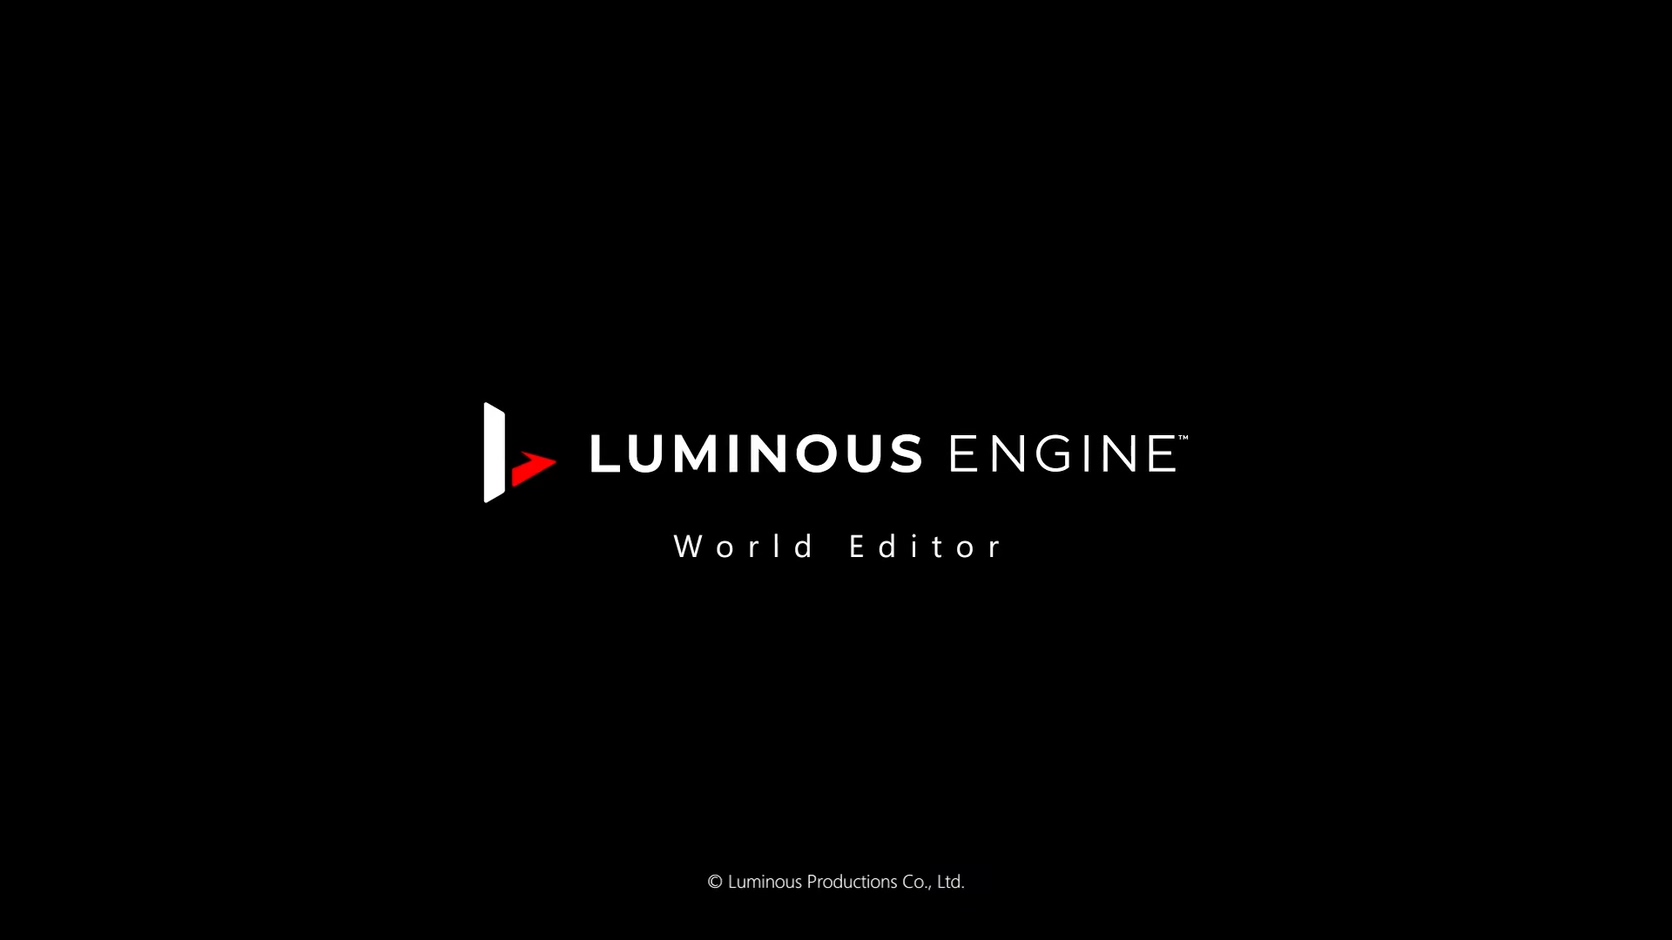 SE夜光引擎新技术视频 展示开放世界程序化生成